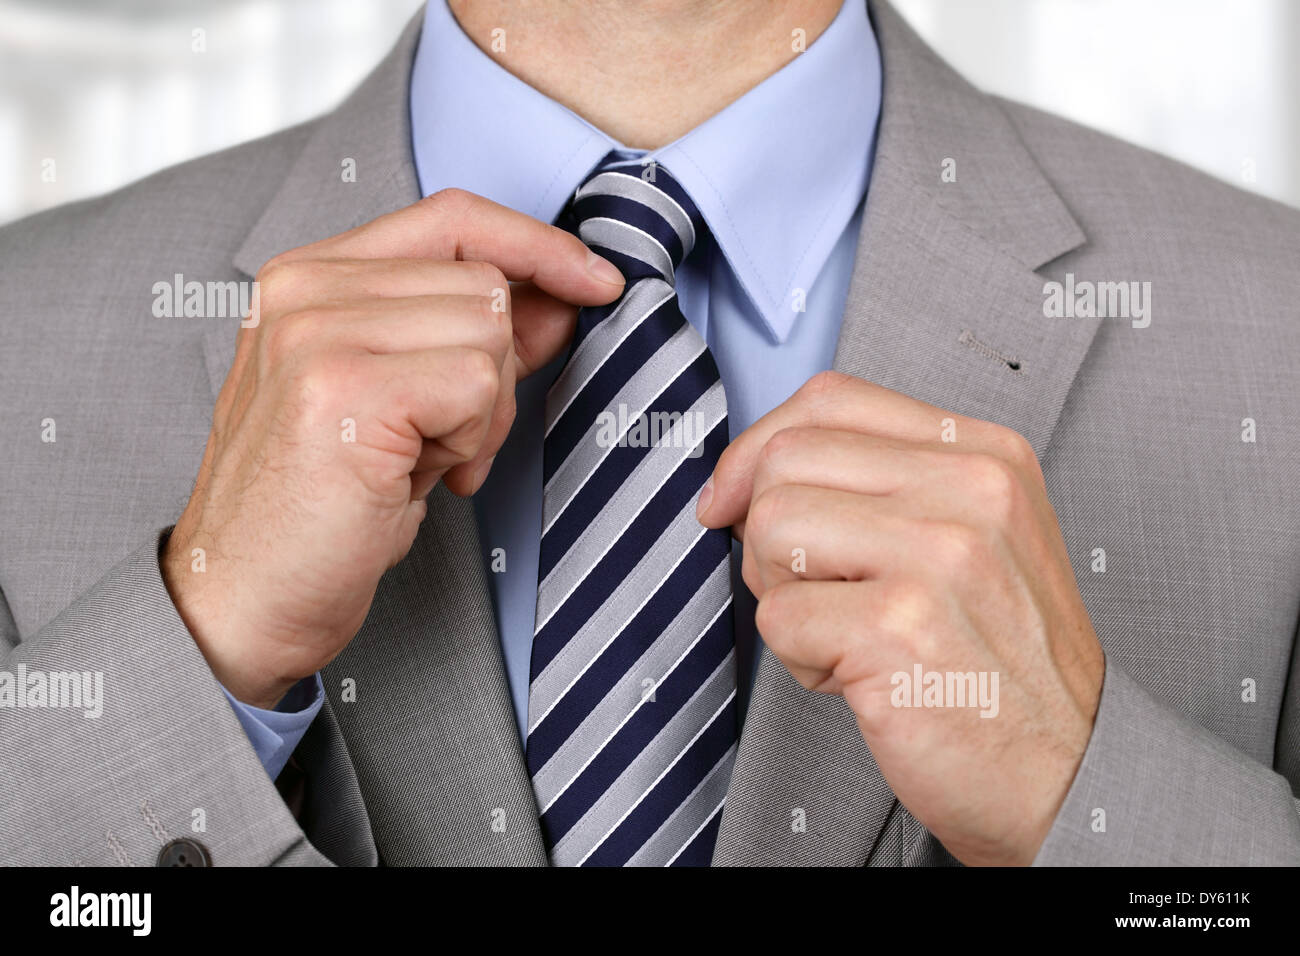 Businessman fixing his tie Stock Photo